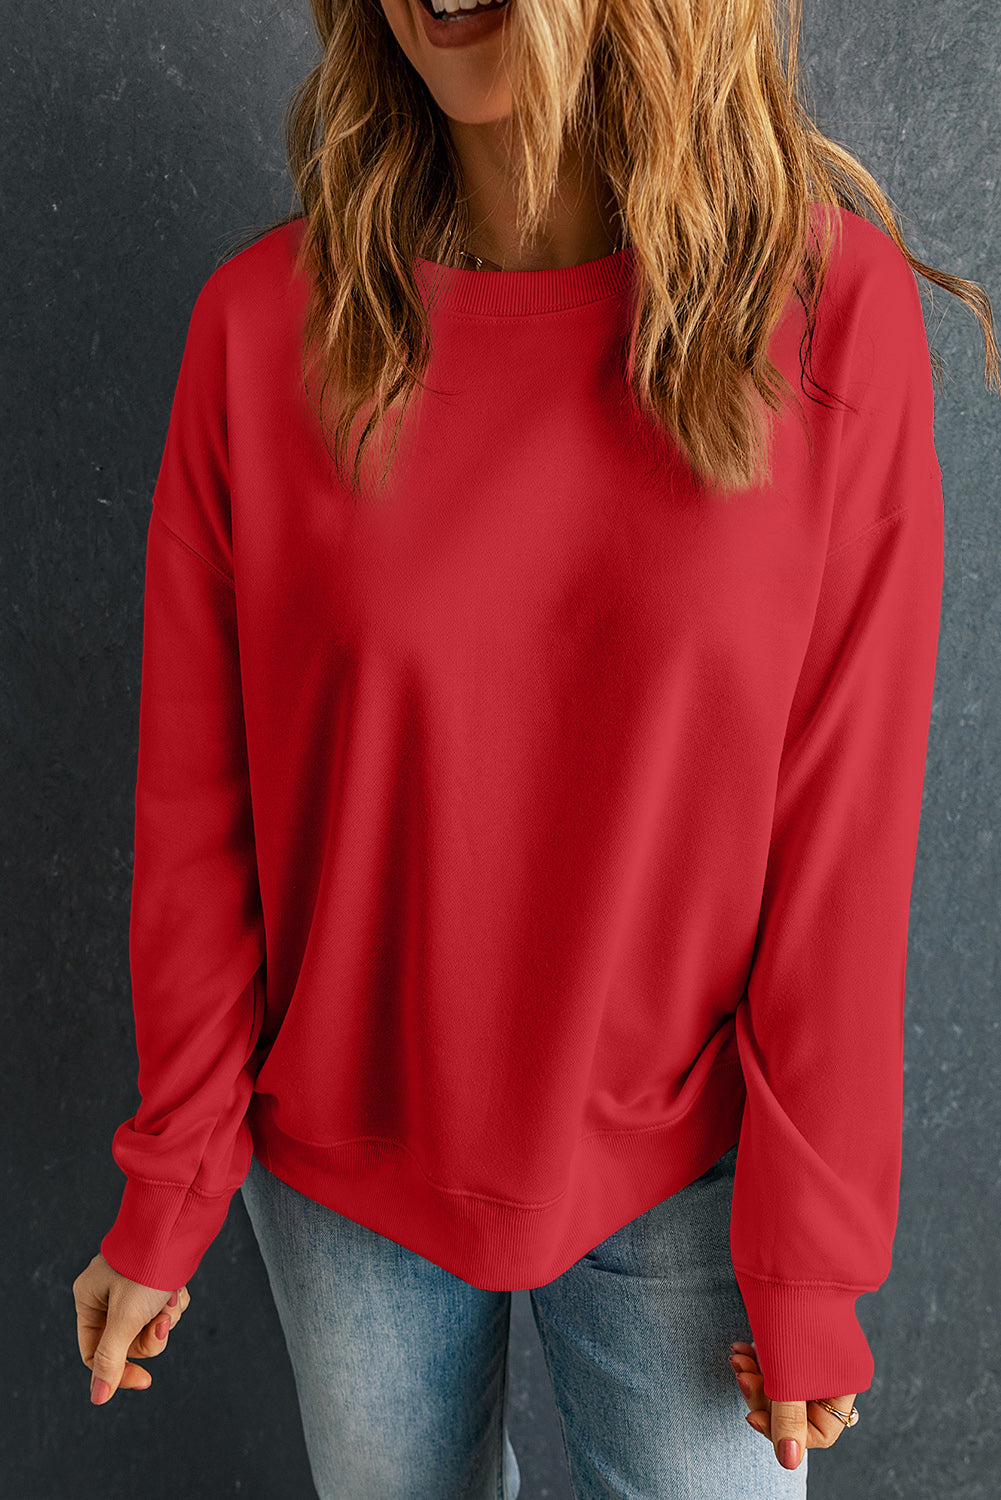 Bež, enobarven, klasičen pulover z okroglim izrezom